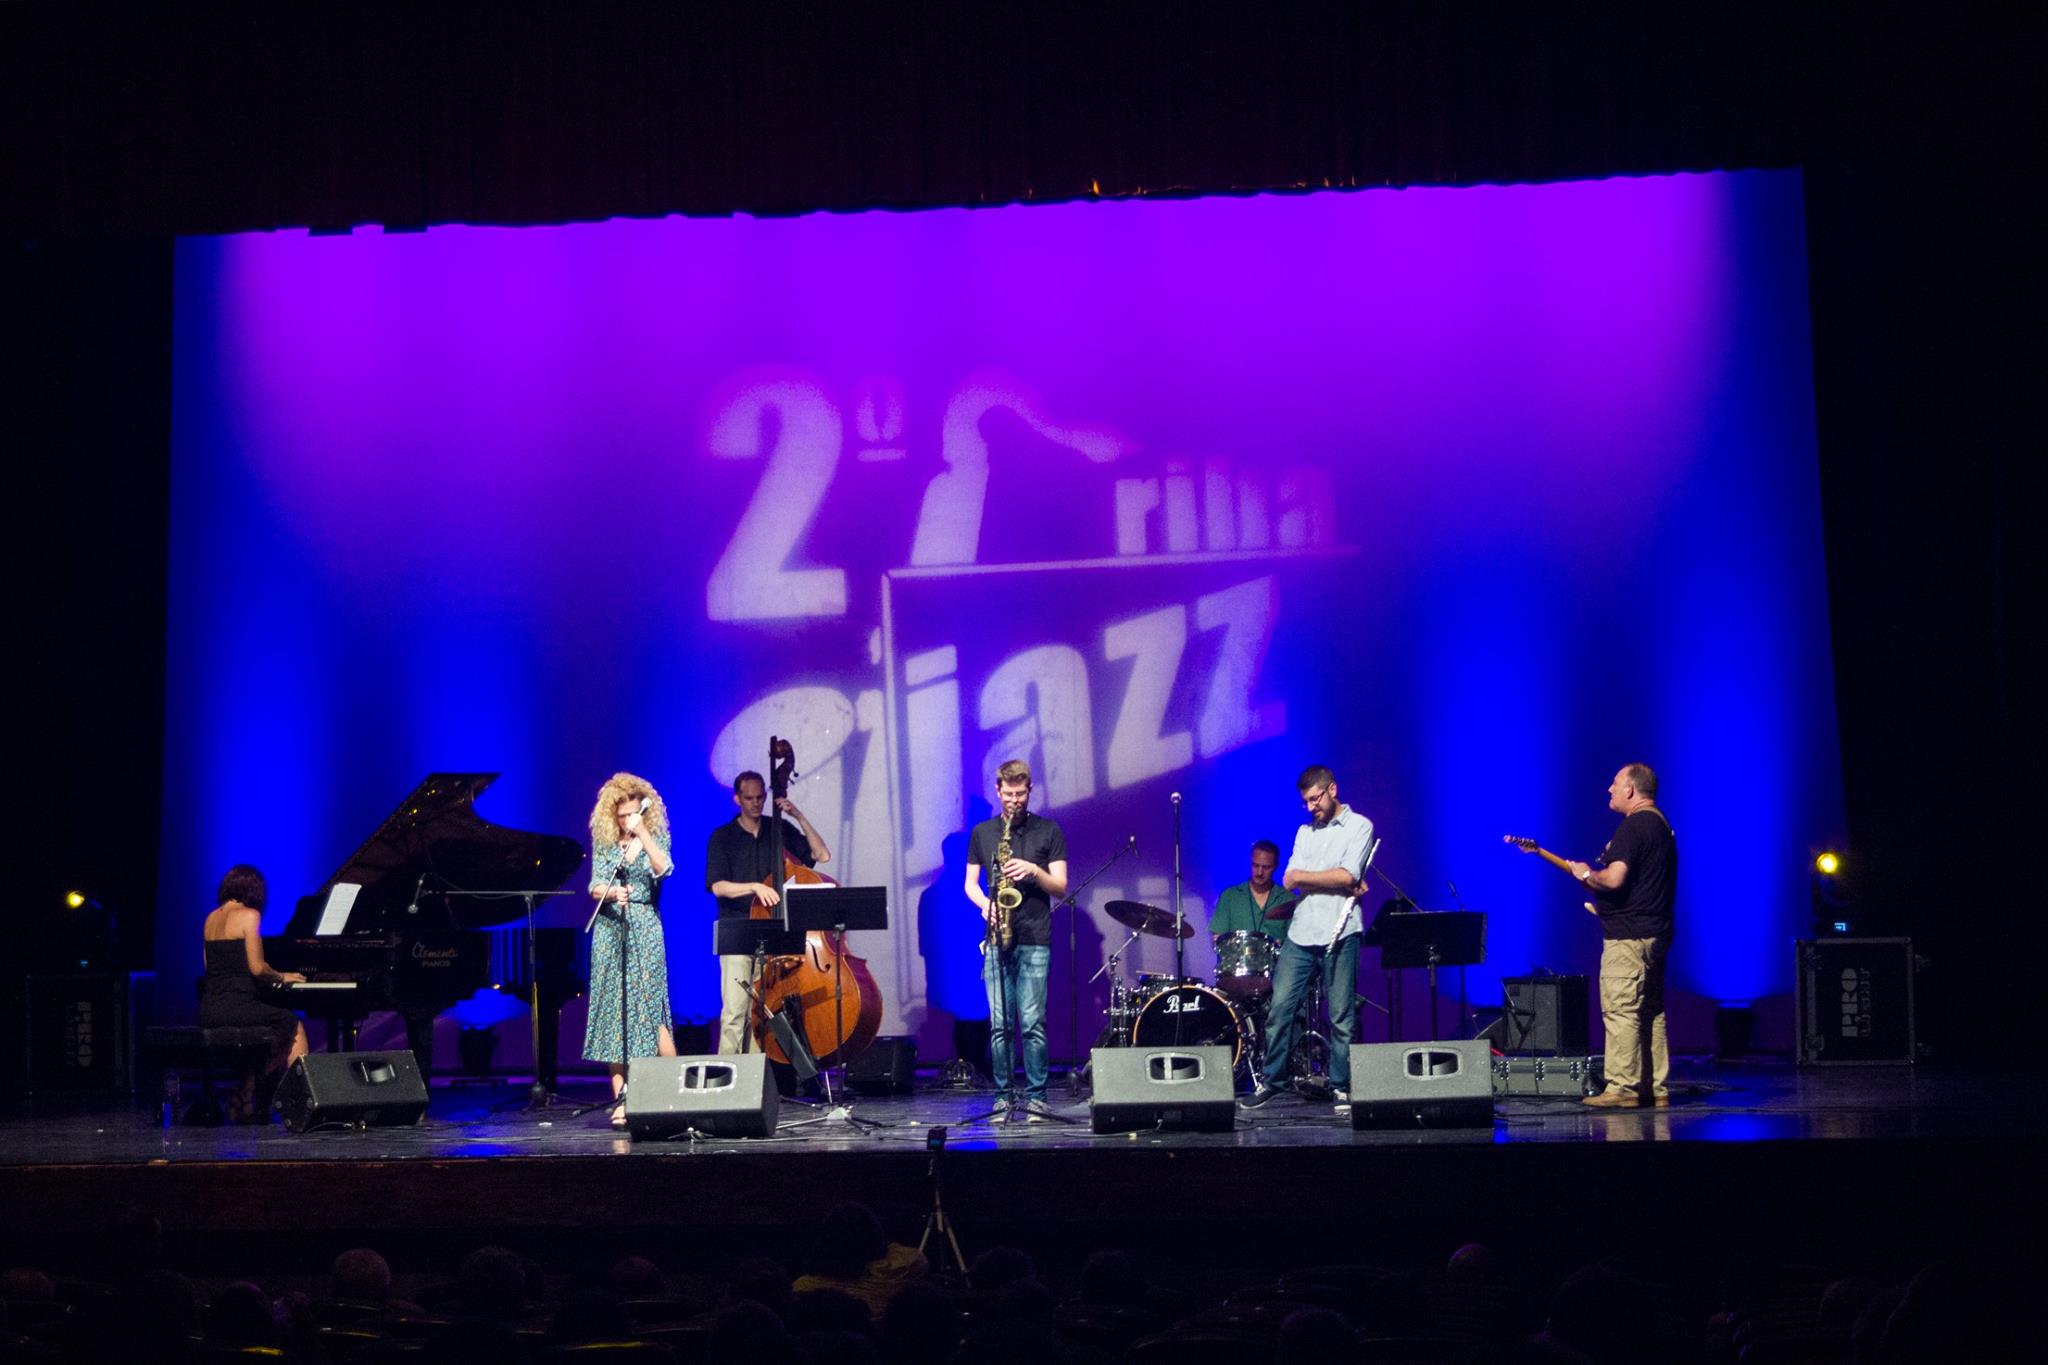 Torna el festival de Jazz de Riba-roja de Tria els dies 18, 19 i 20 de juliol